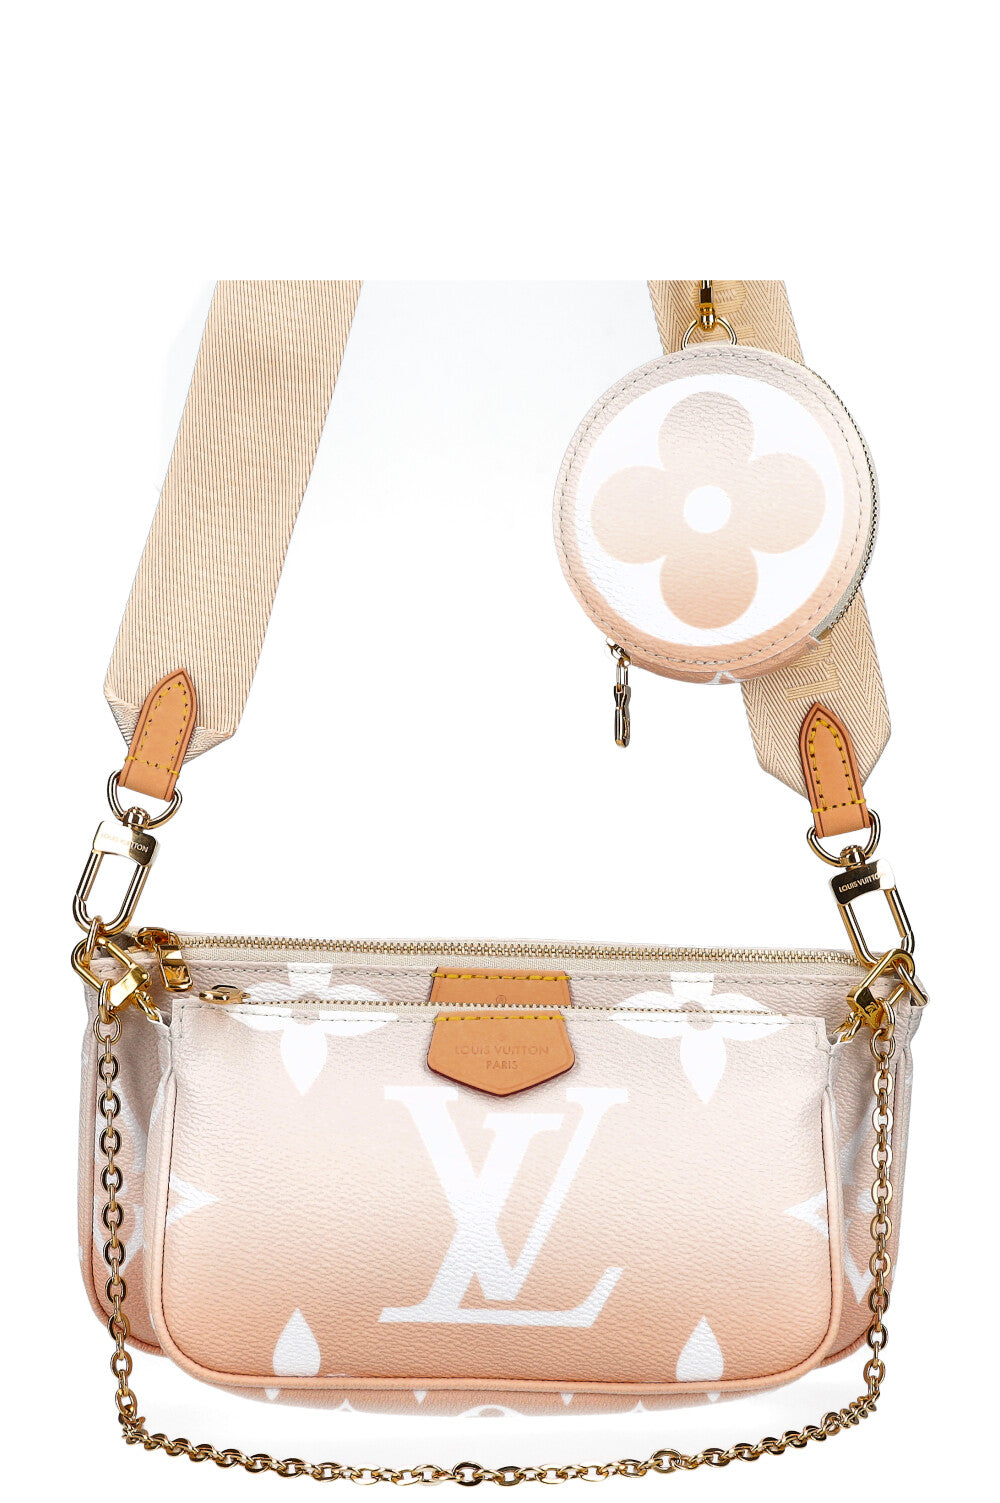 Extension-fmedShops, Second Hand Louis Vuitton Geant Bags